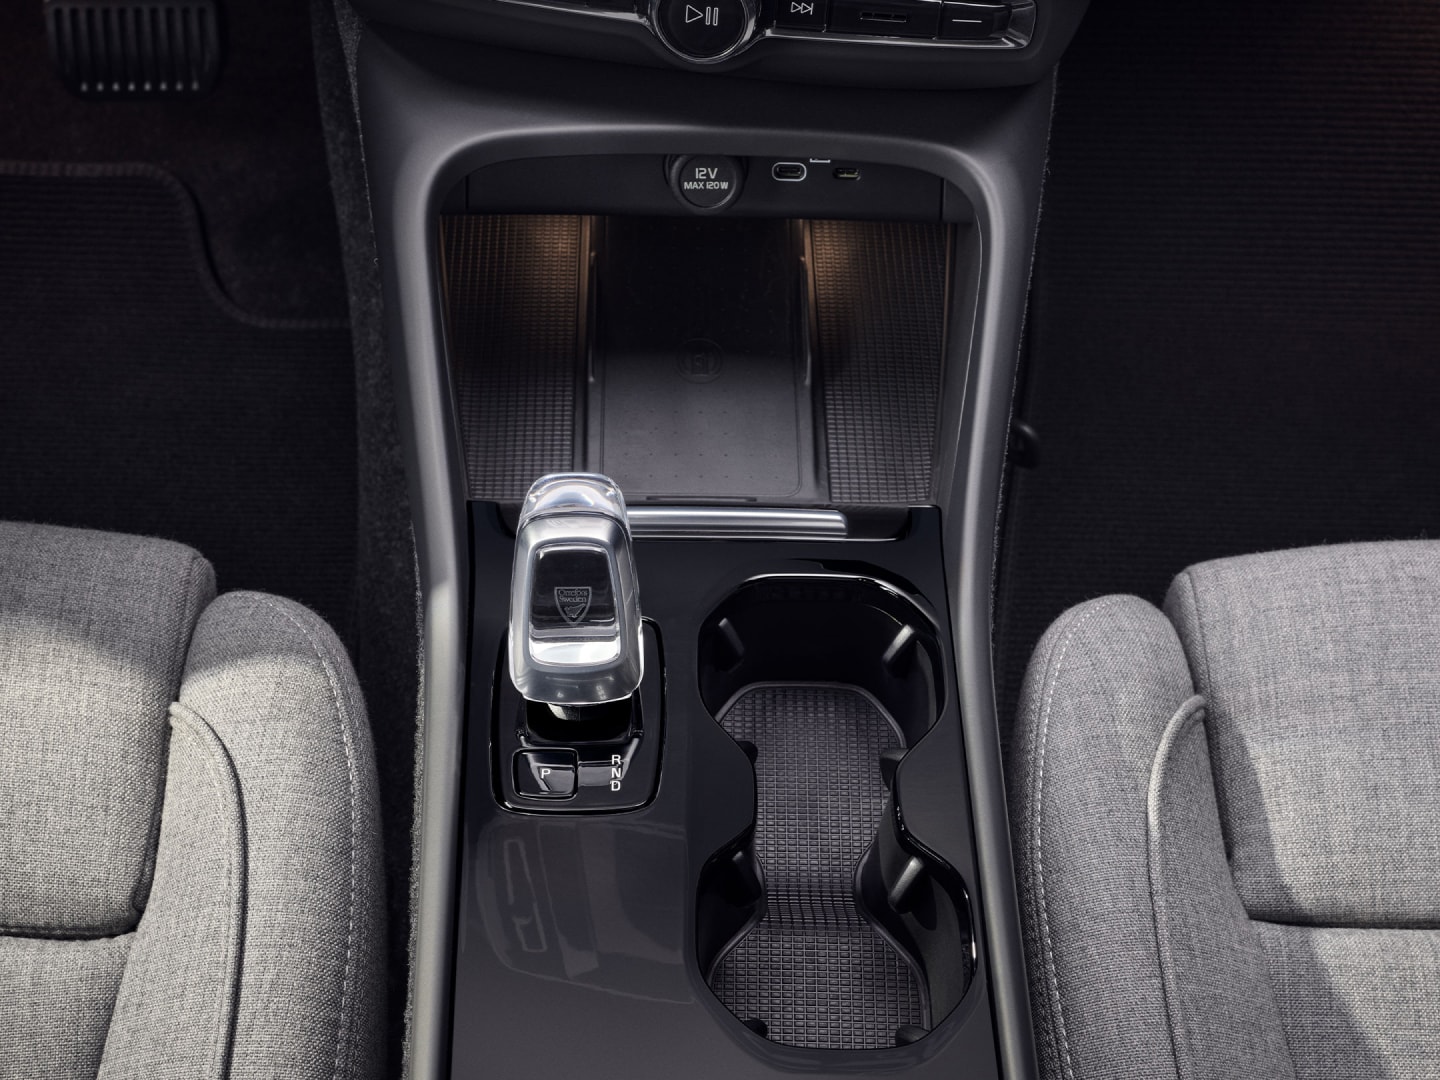 Porte-gobelet, levier de vitesse et chargeur sans fil placés entre les sièges avant de la Volvo EC40 100% électrique.